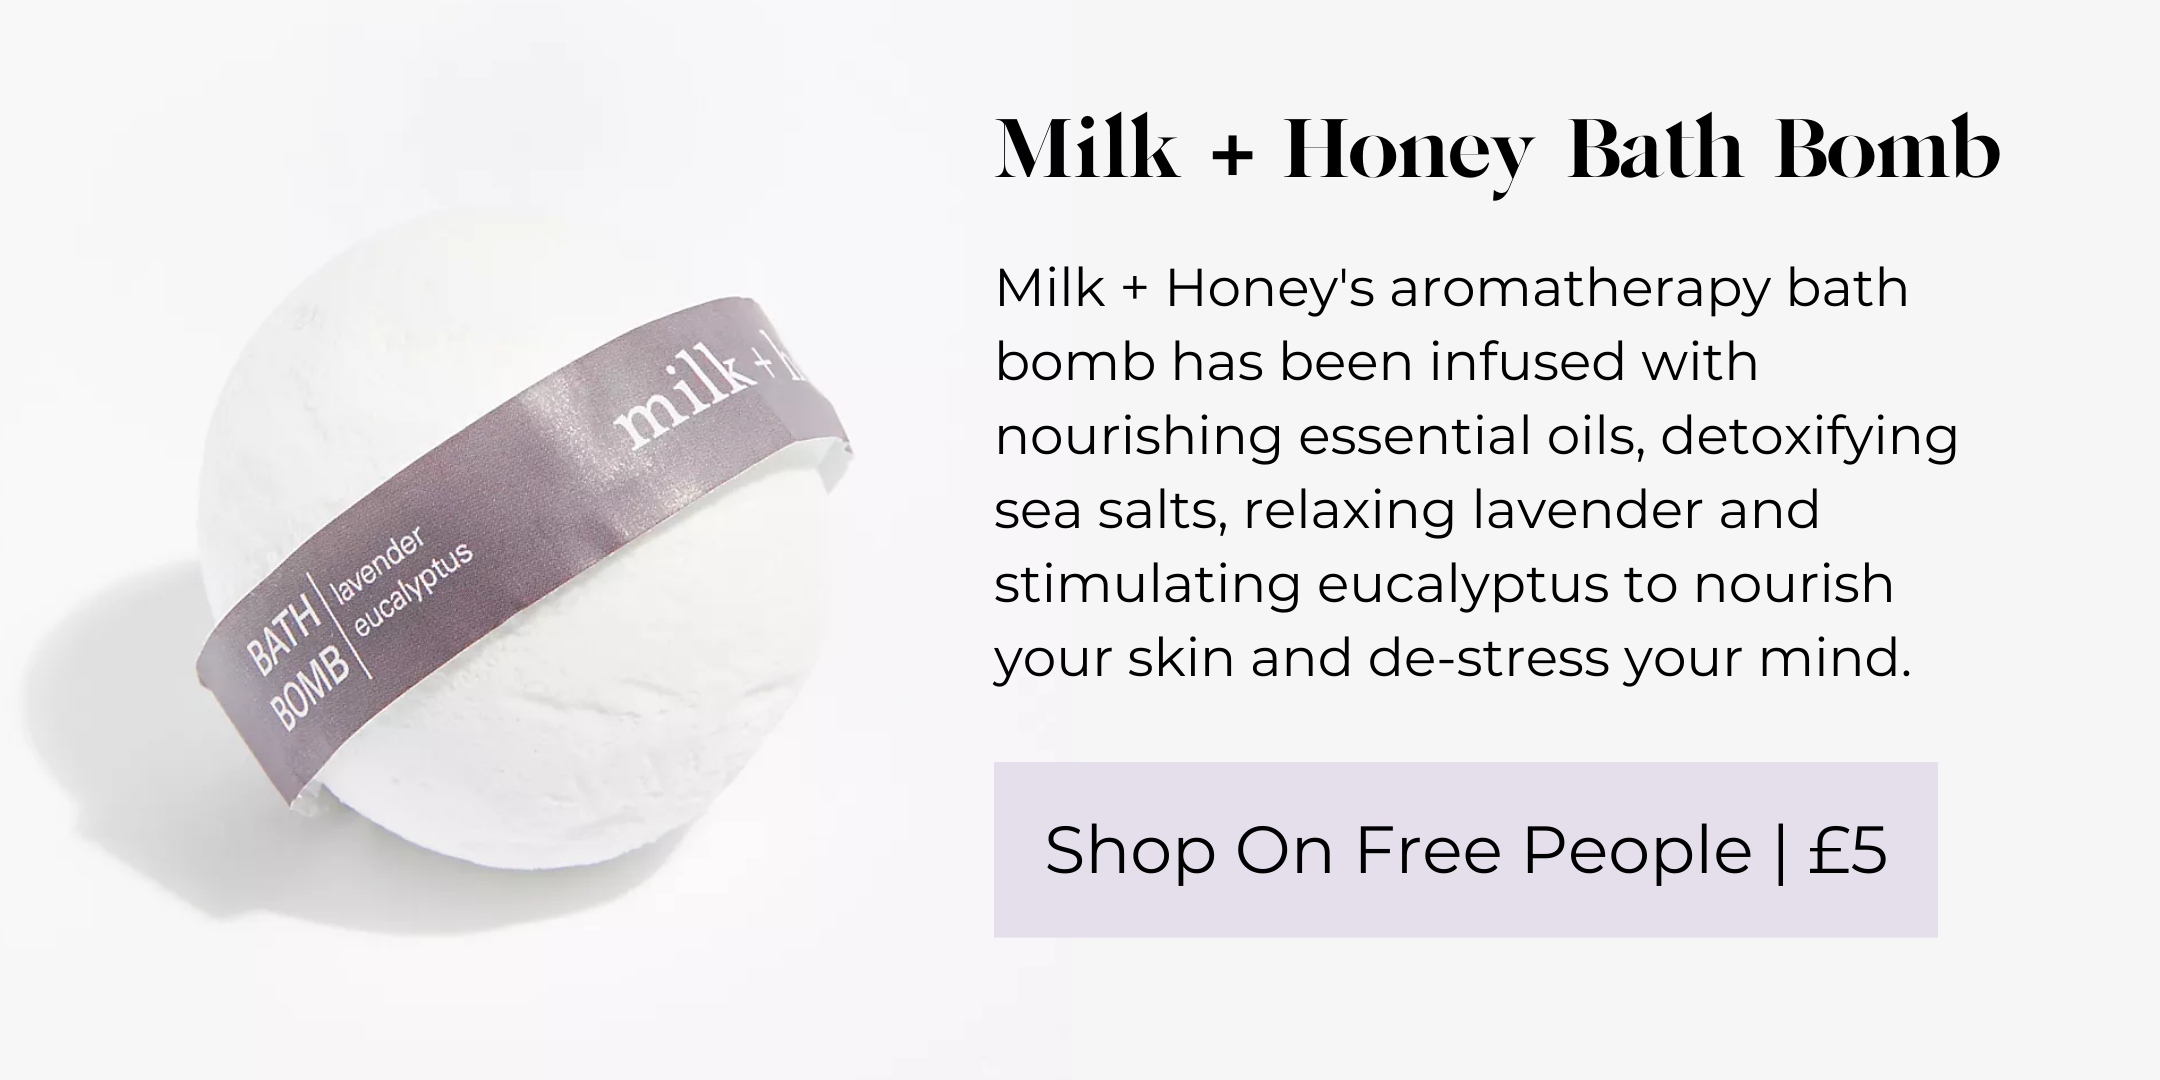 Milk + Honey Bath Bomb (2).png